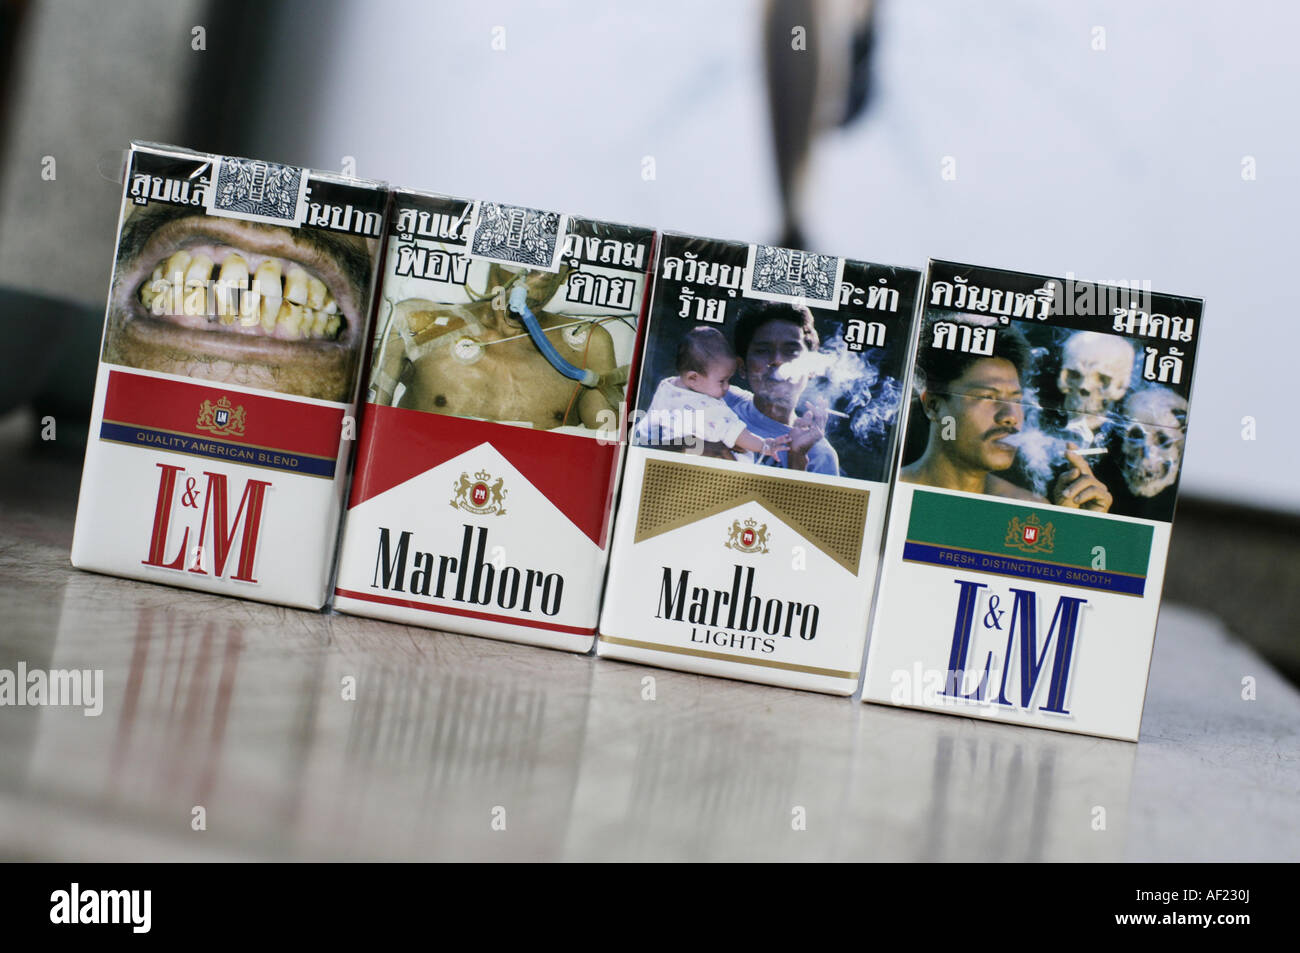 I pacchetti di sigarette con immagini di persone morte, malato di cancro, Foto Stock